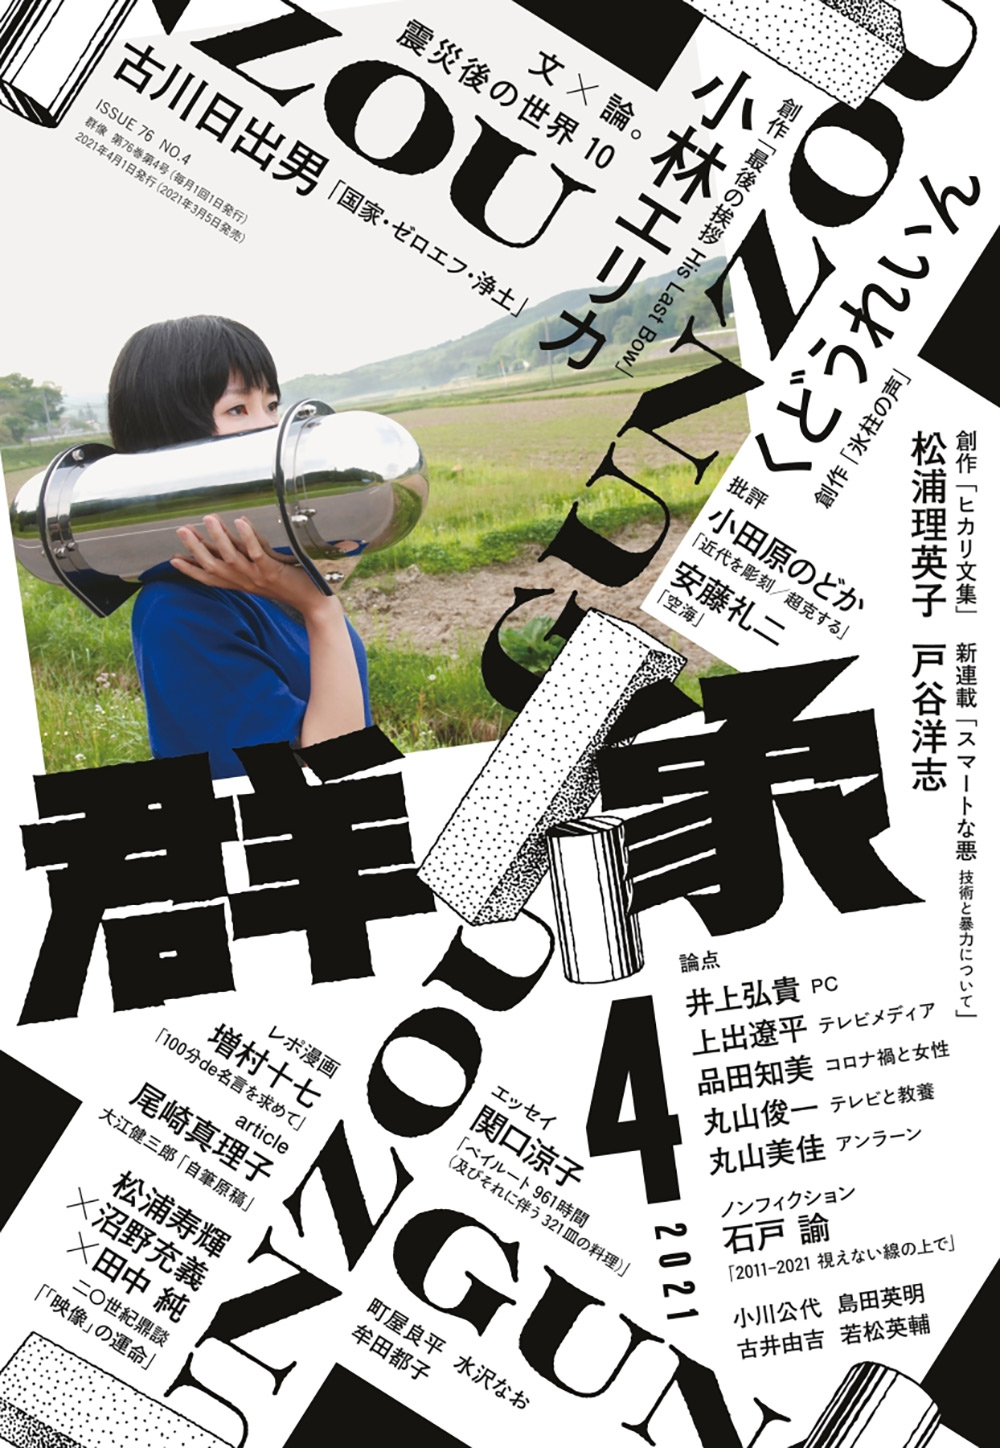 优秀 日本杂志 群像 封面设计 优优教程网 自学就上优优网 Uiiiuiii Com